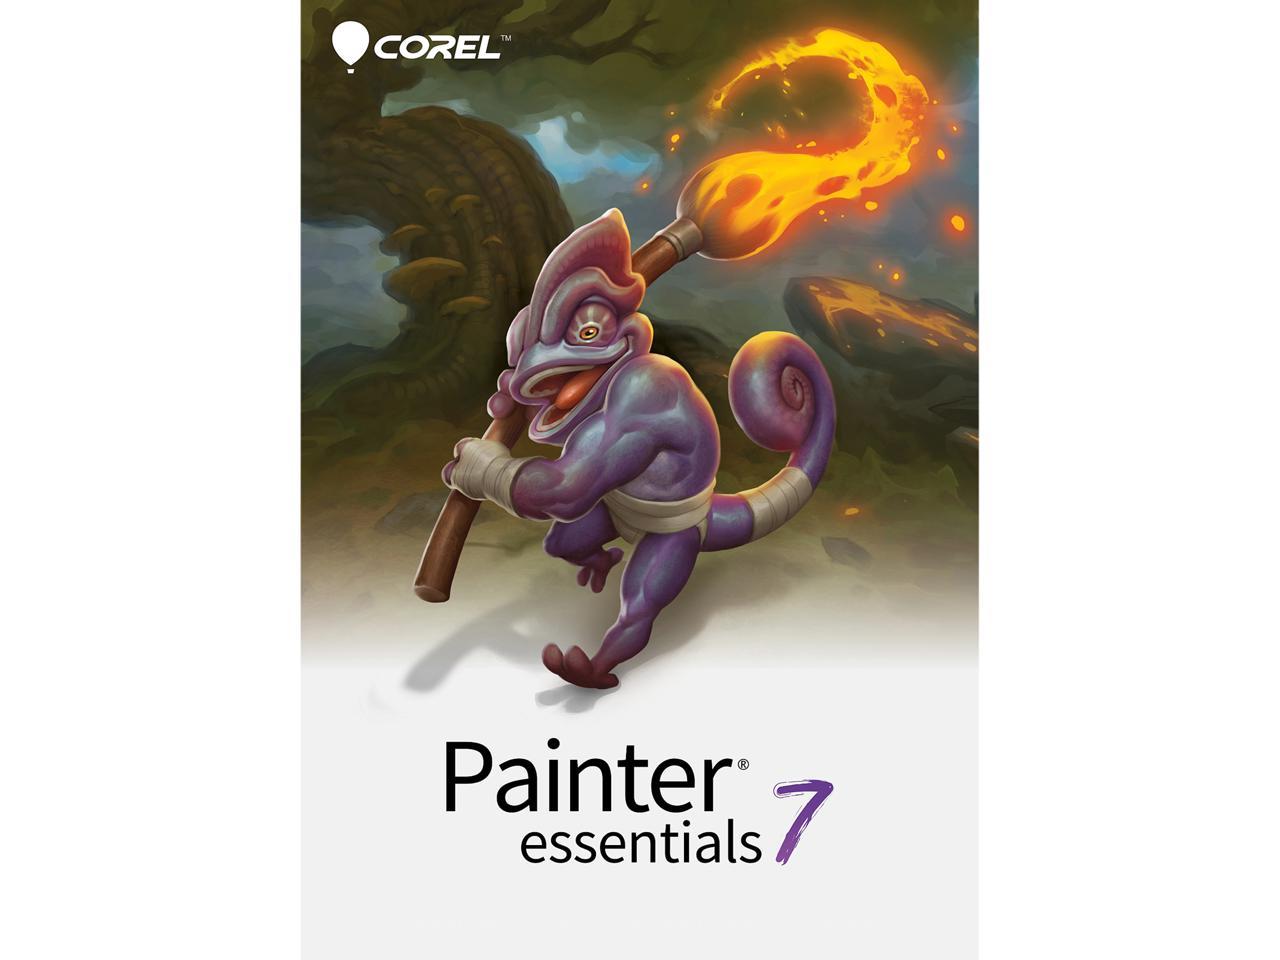 corel painter essentials 7 review